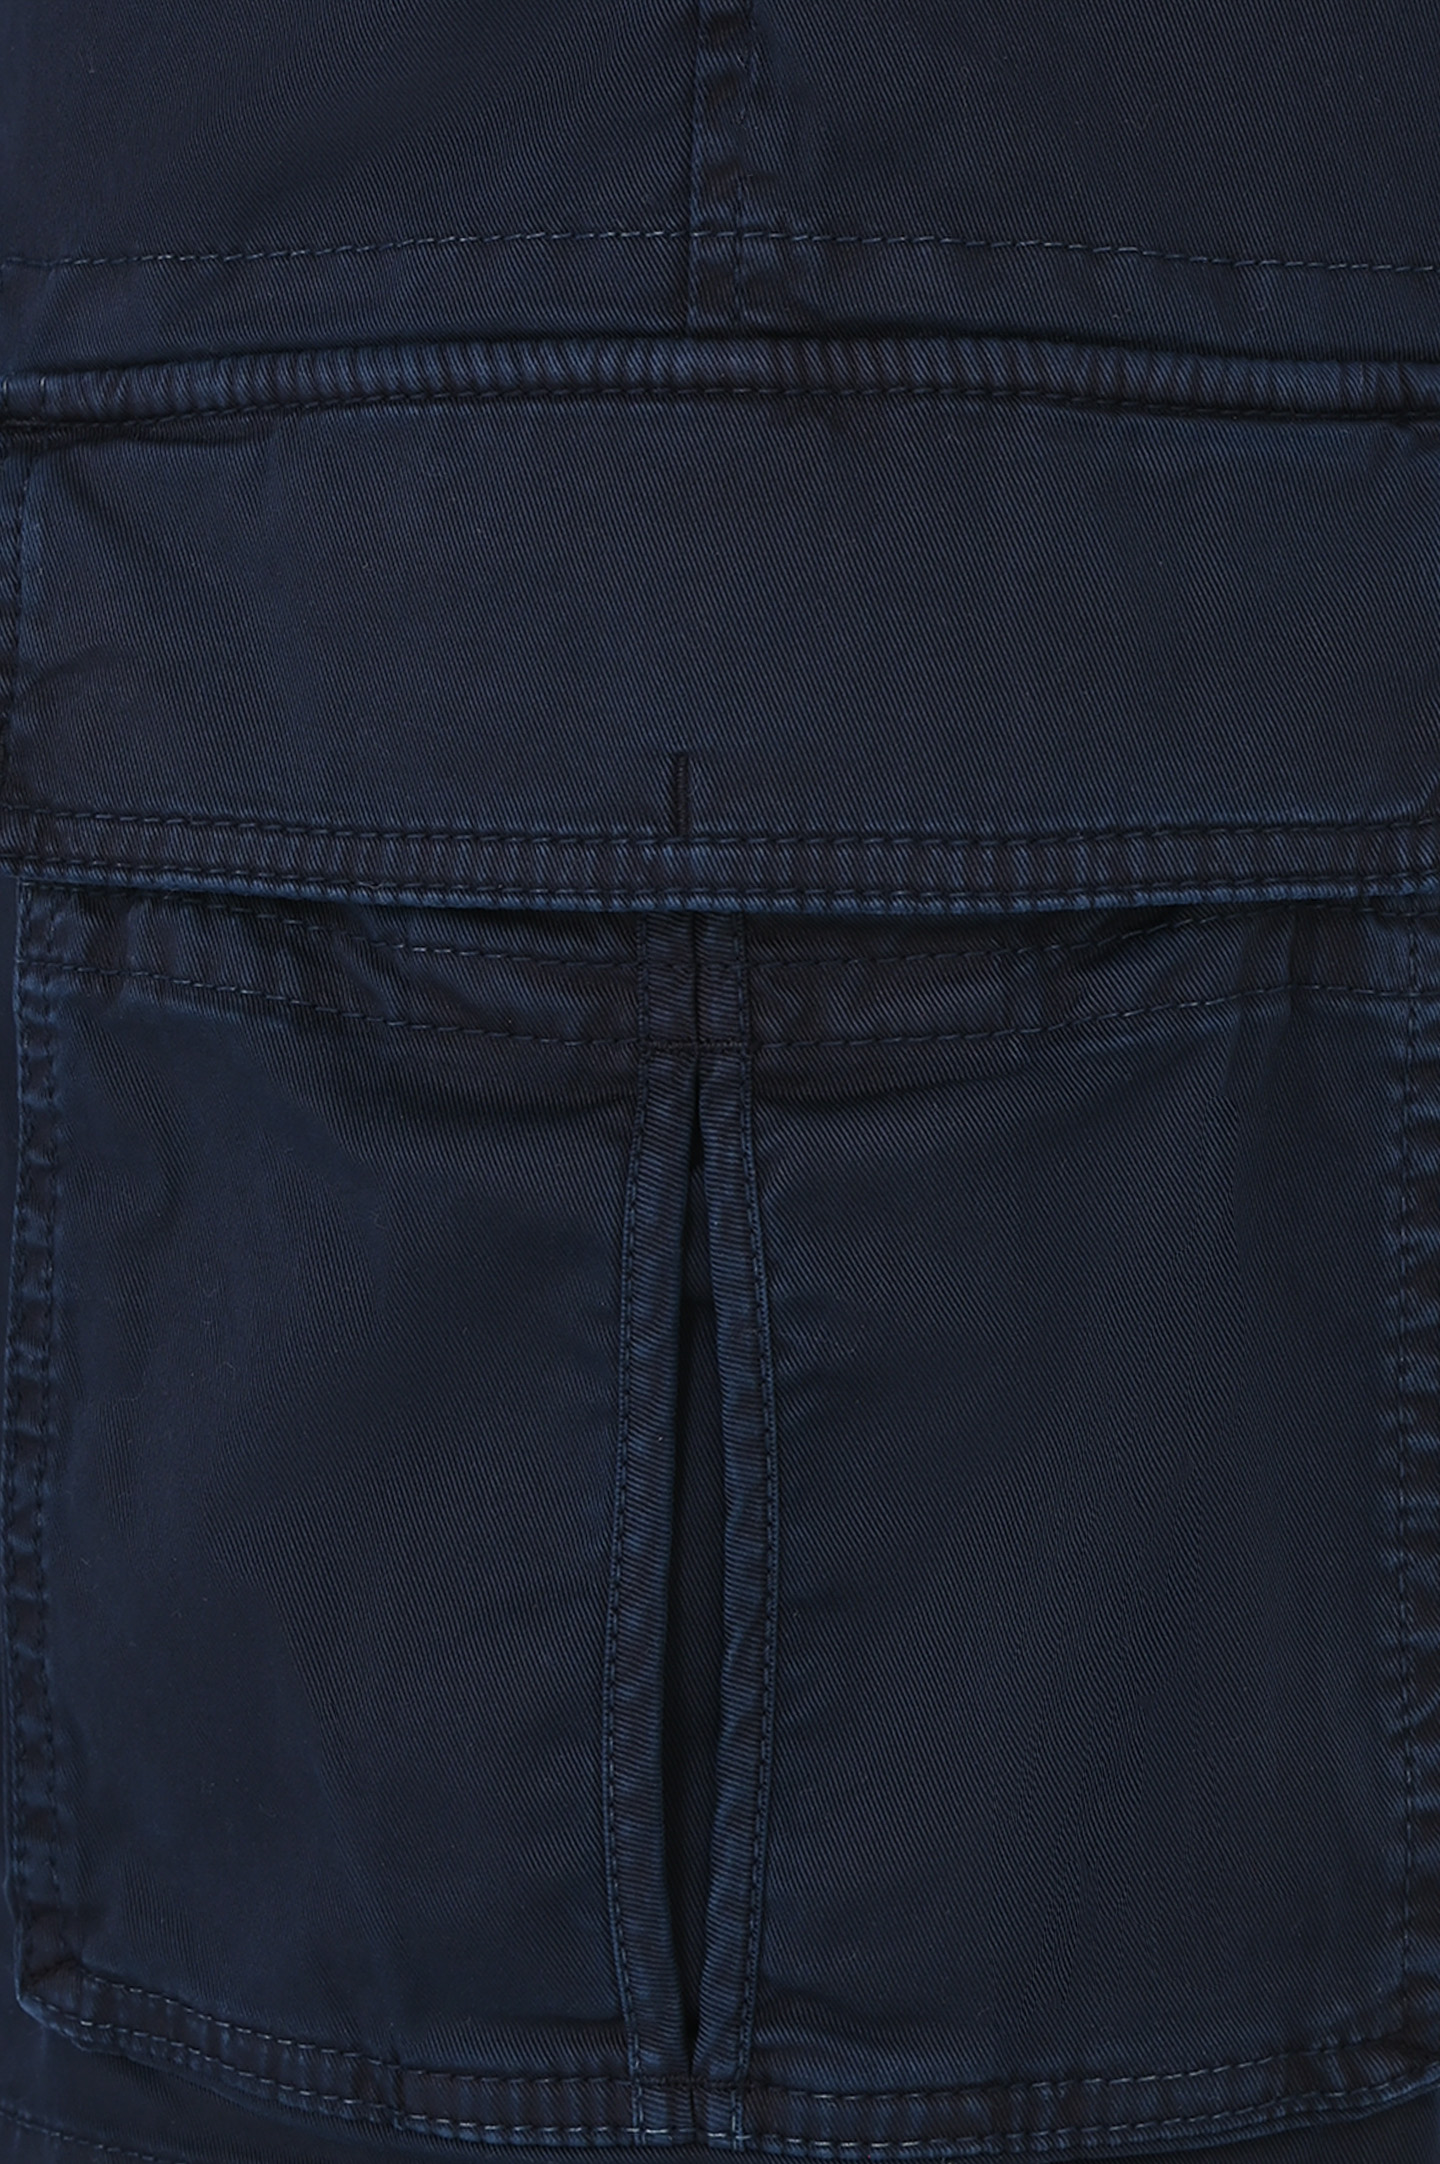 Шорты из хлопка и эластана с накладными карманами BRUNELLO  CUCINELLI M289LU0030, цвет: Темно-синий, Мужской